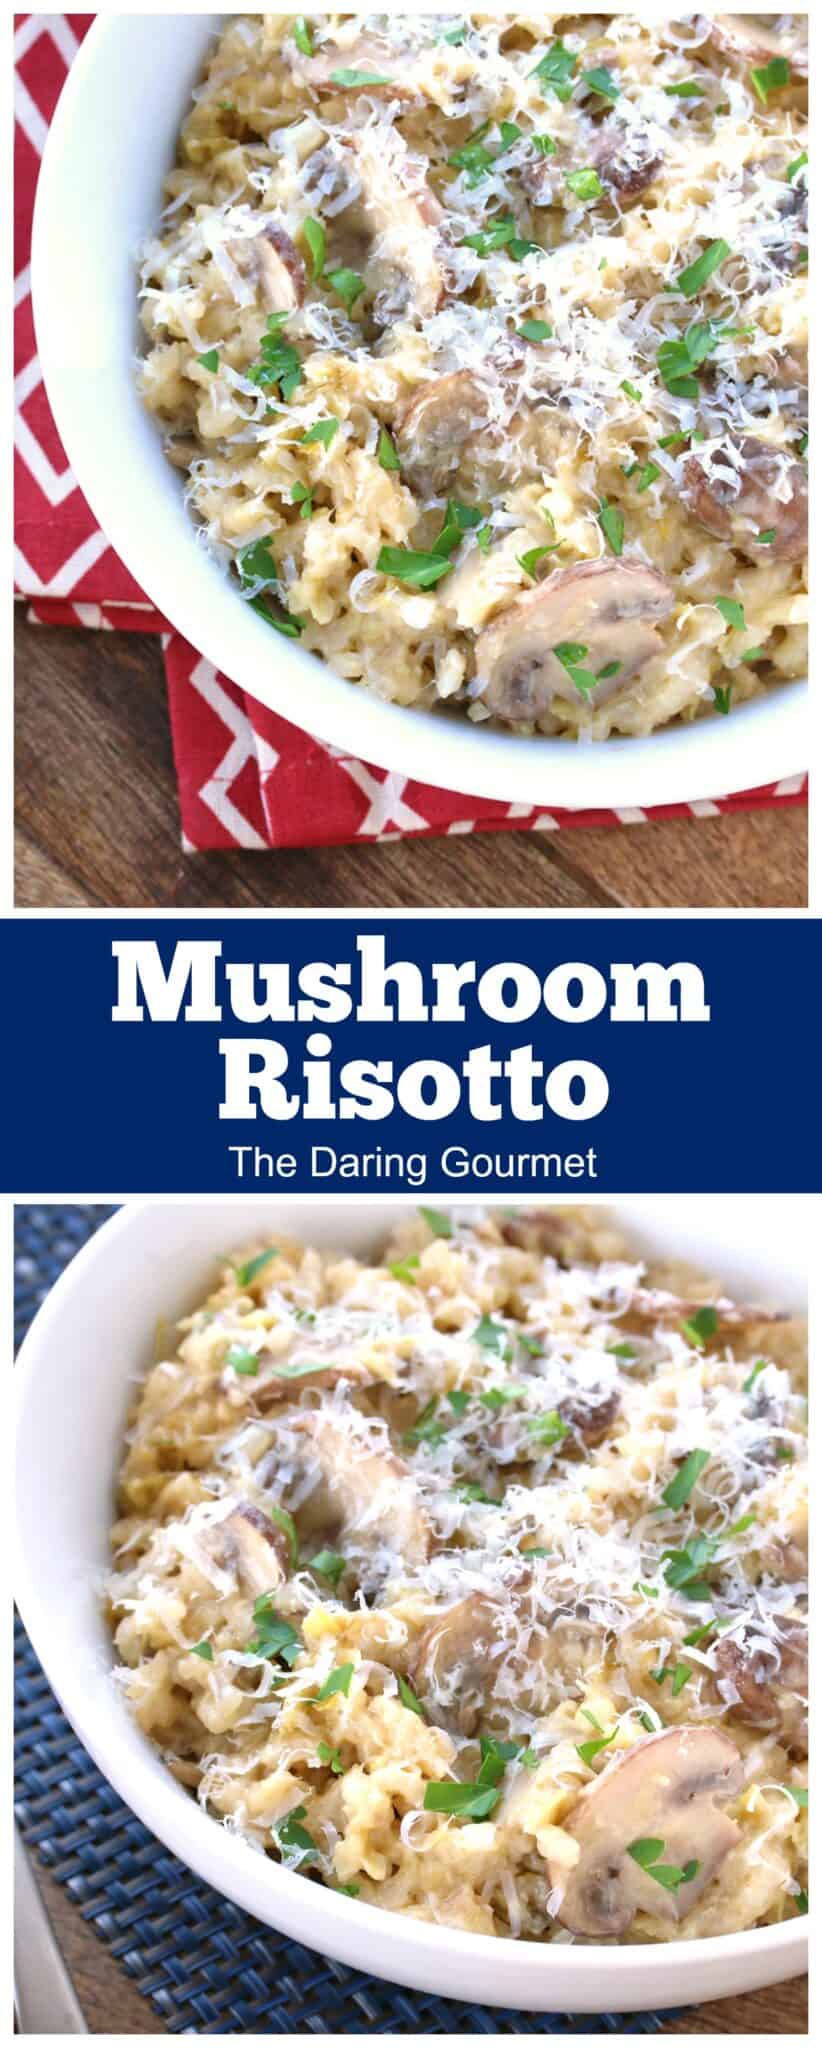 mushroom risotto recipe leek onions parmesan white wine Aneto broth